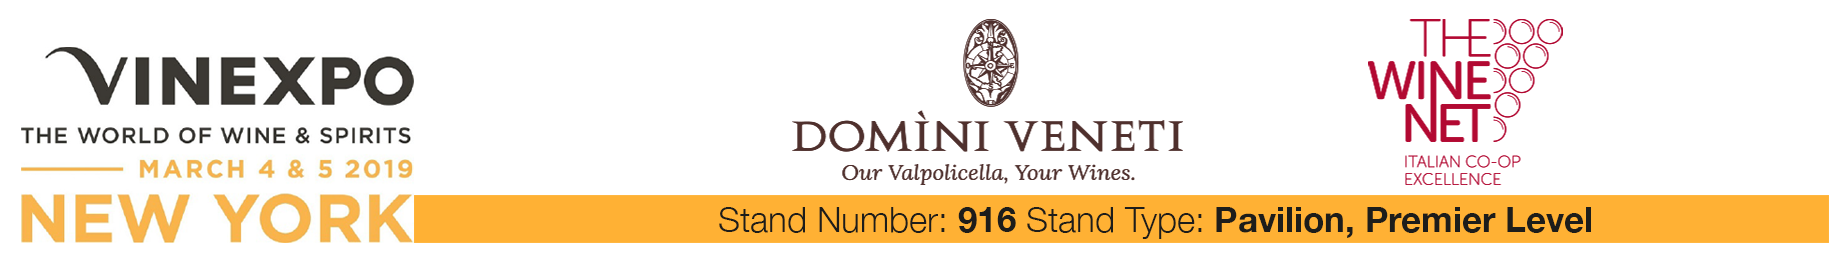 Domini Veneti a Vinexpo NY con THE WINE NET - 1